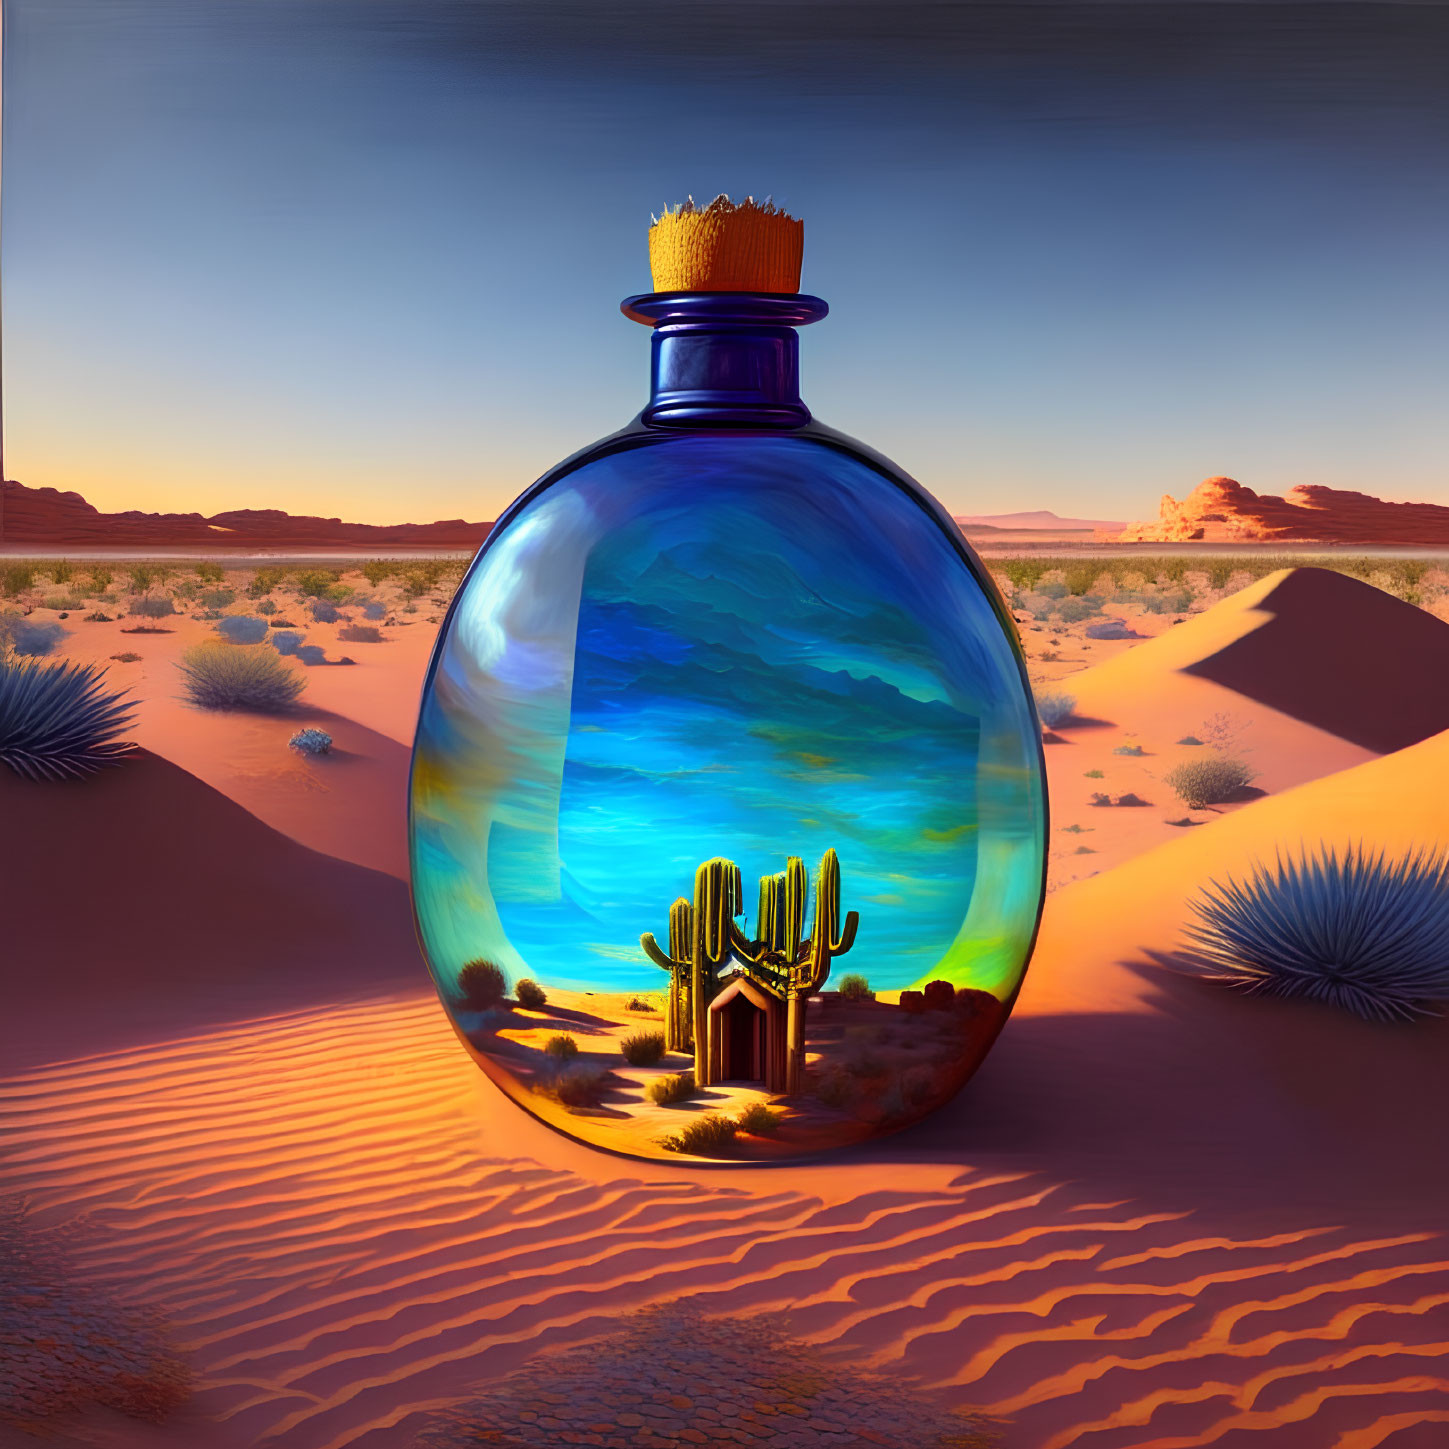 Glass bottle with desert and ocean scene on sand dunes